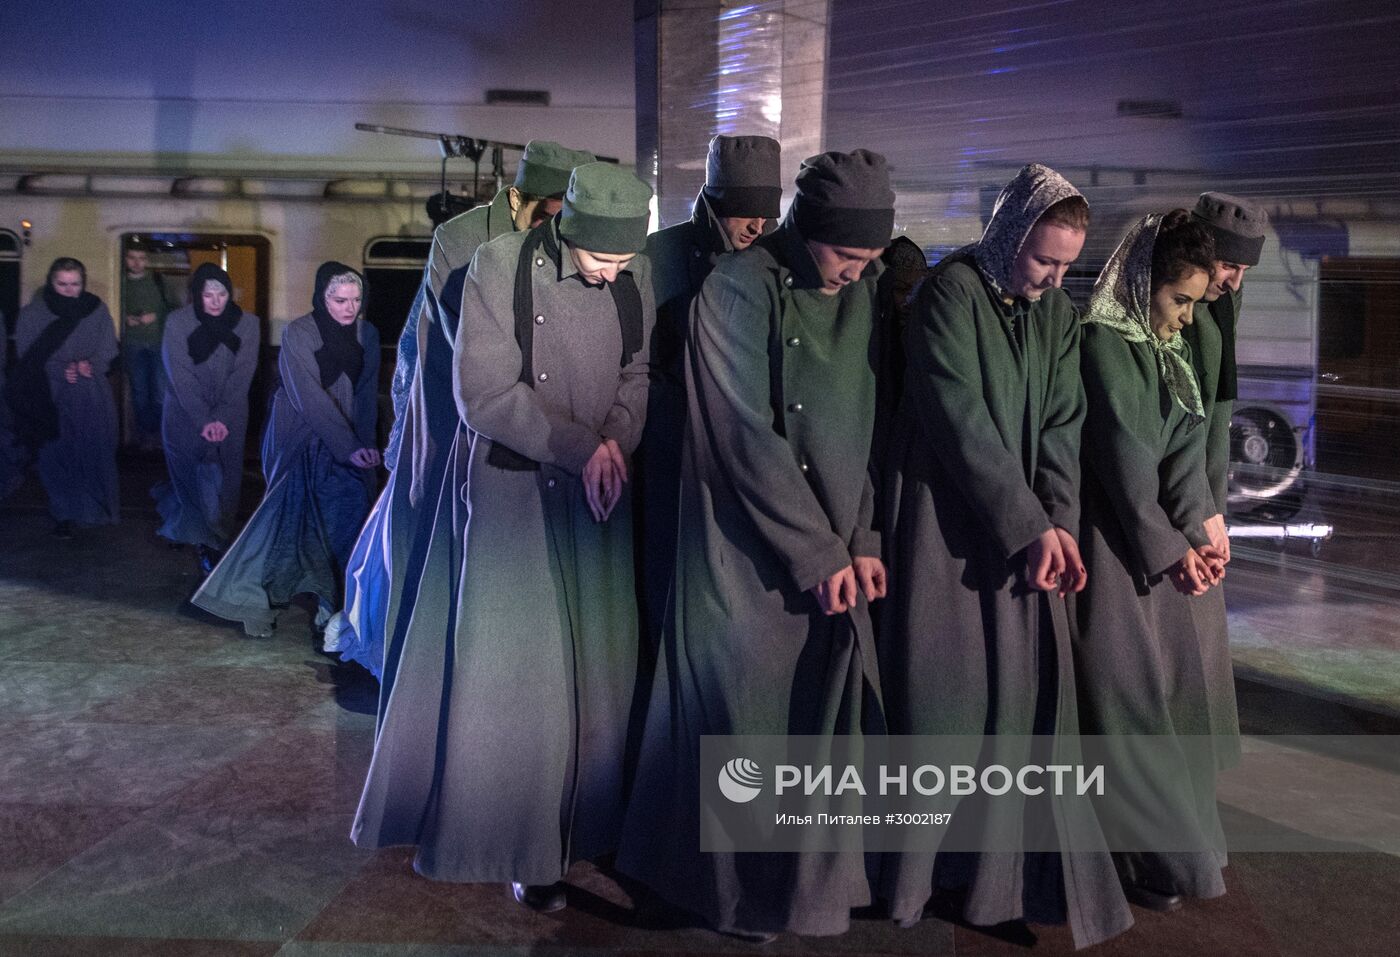 Постановка спектакля "Воскресение" на станции метро "Кропоткинская"